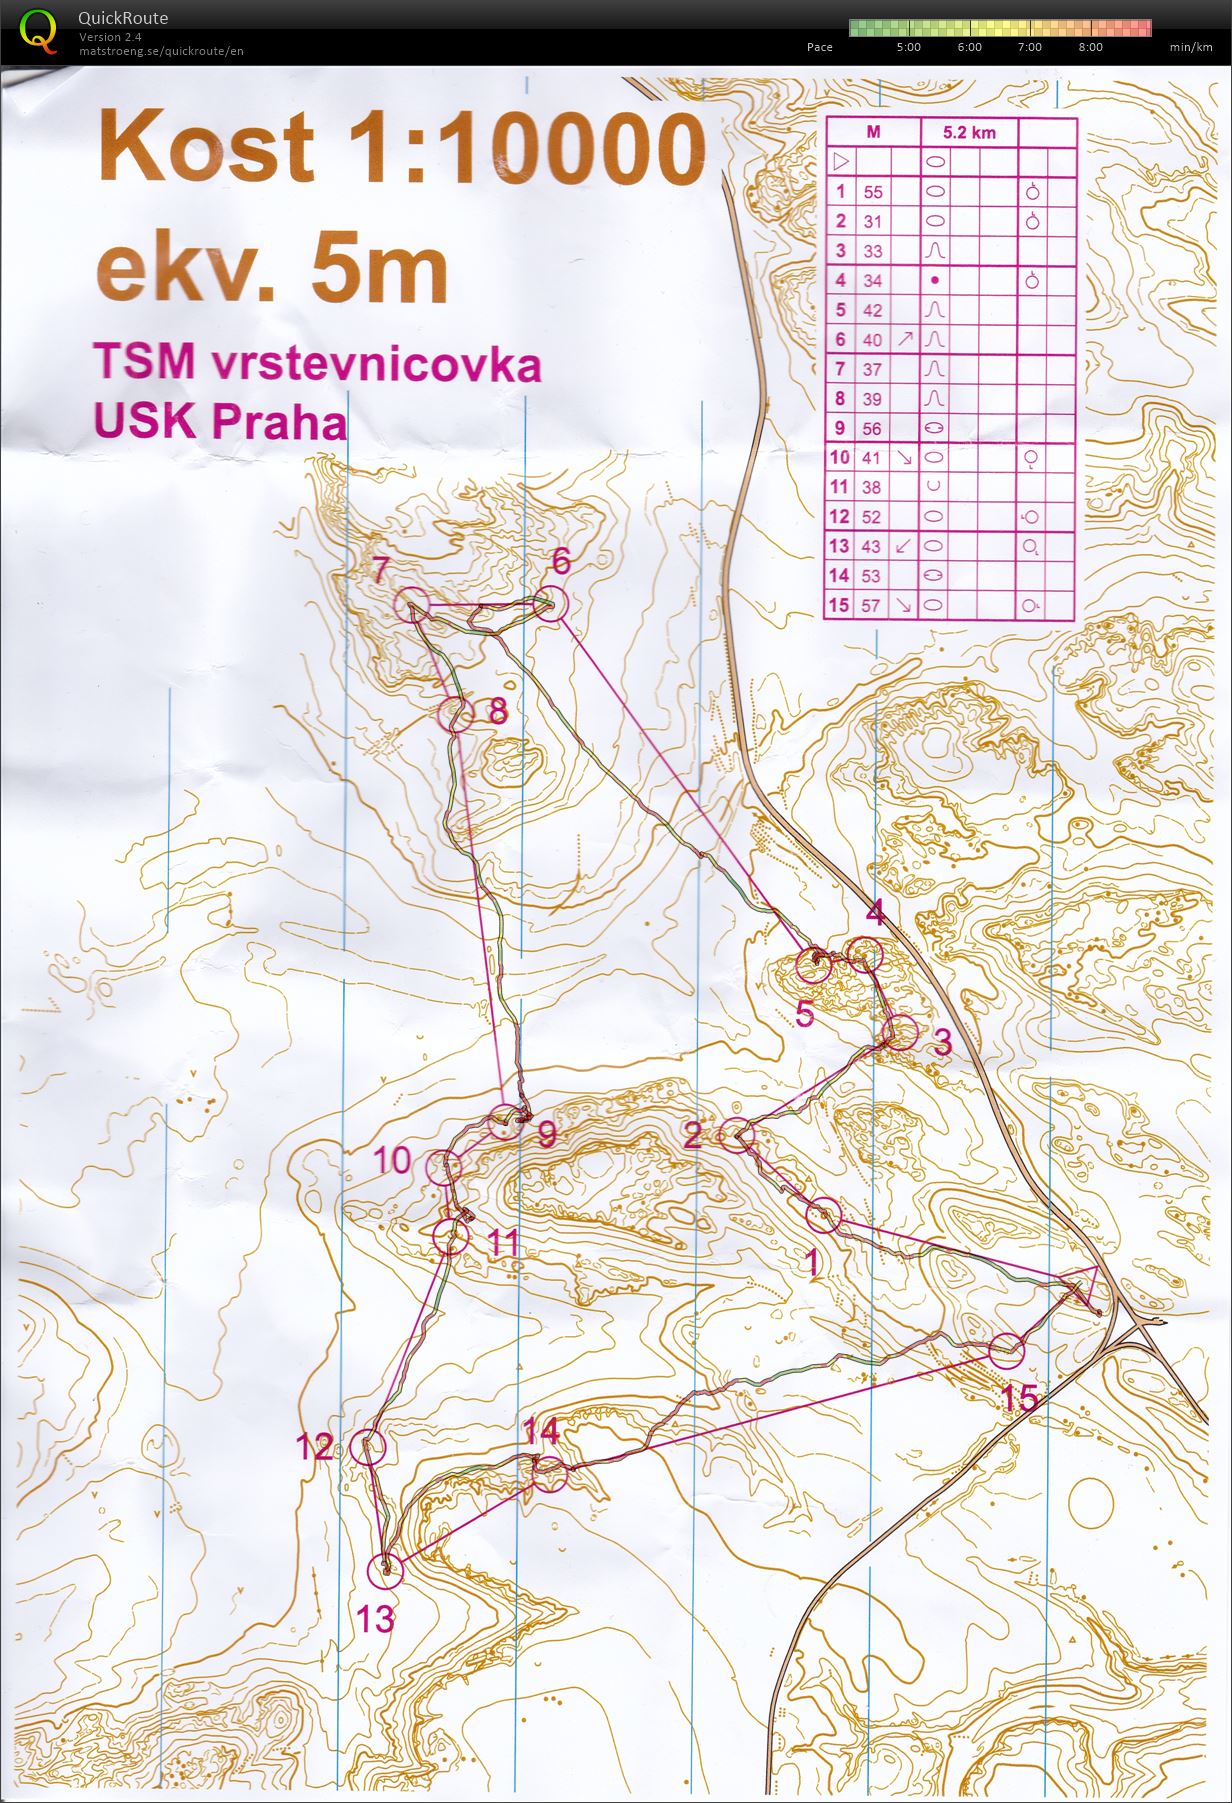 TSM Vrstevnicovka (02-05-2021)